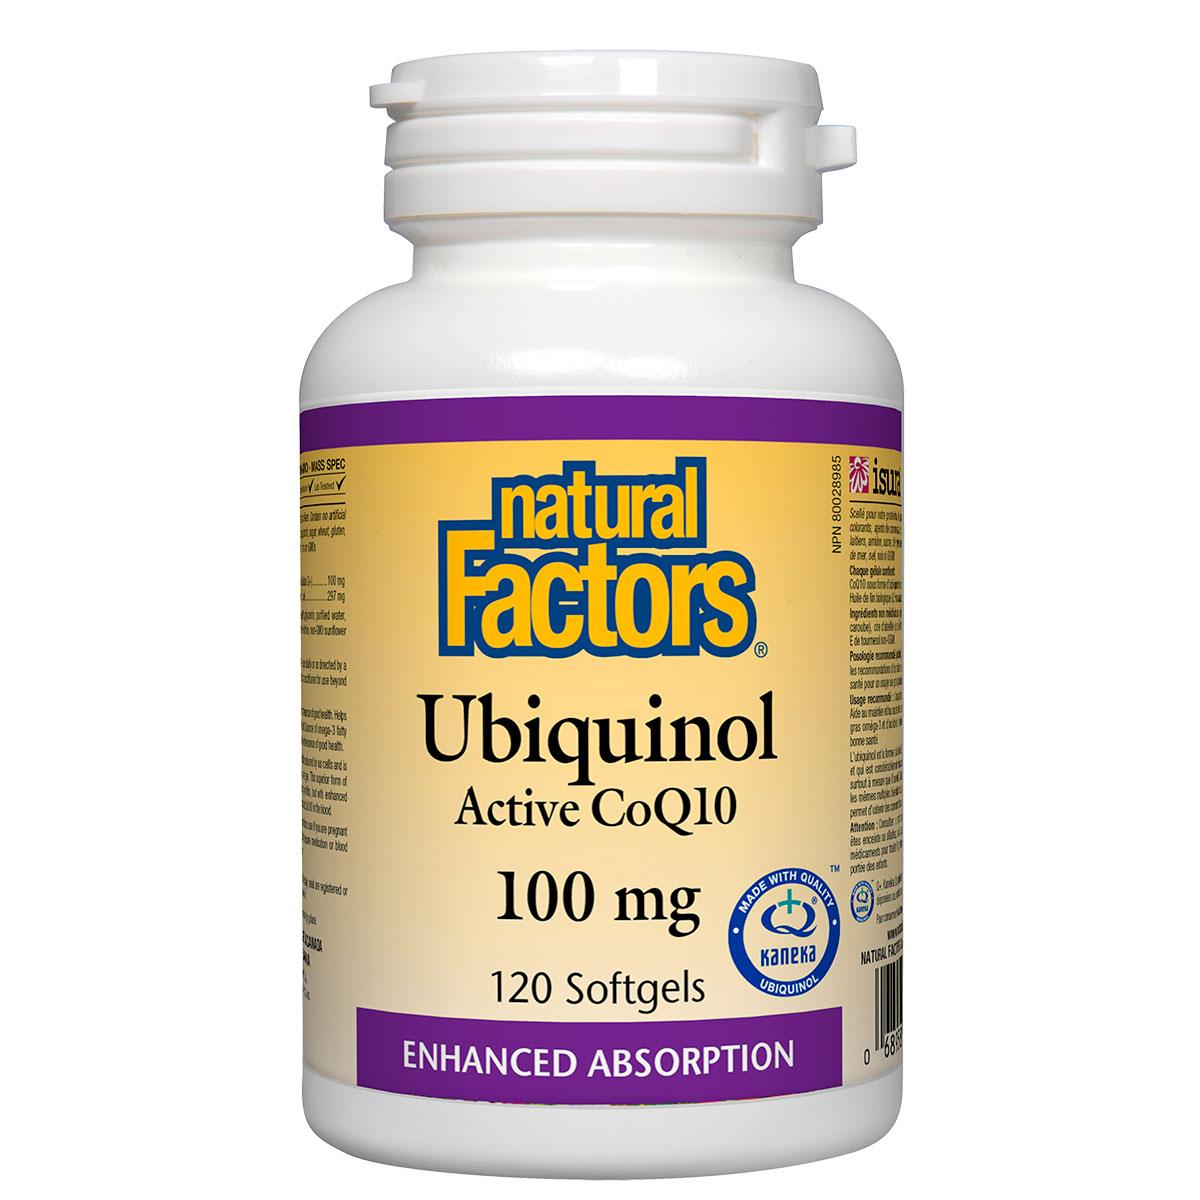 Natural Factors Ubiquinol Active CoQ10, 100mg, 120 Softgels